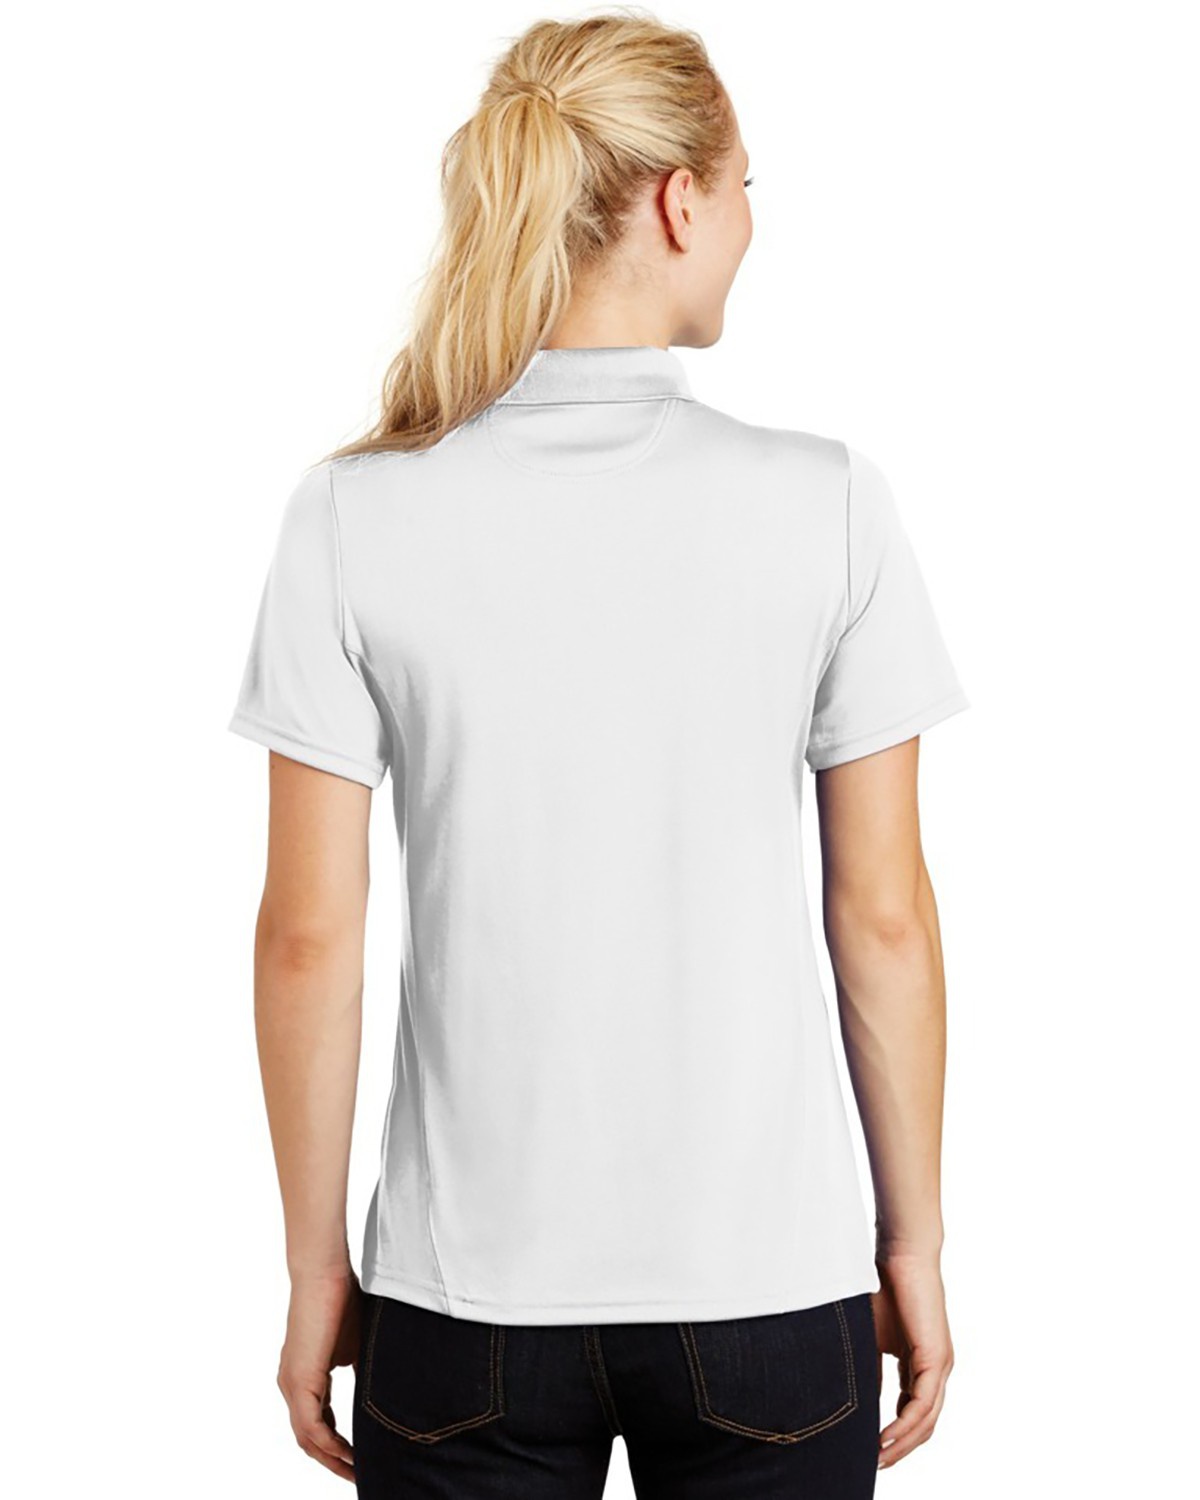 'Sport Tek L475 Ladies Dry Zone Raglan Accent Sport Shirt'